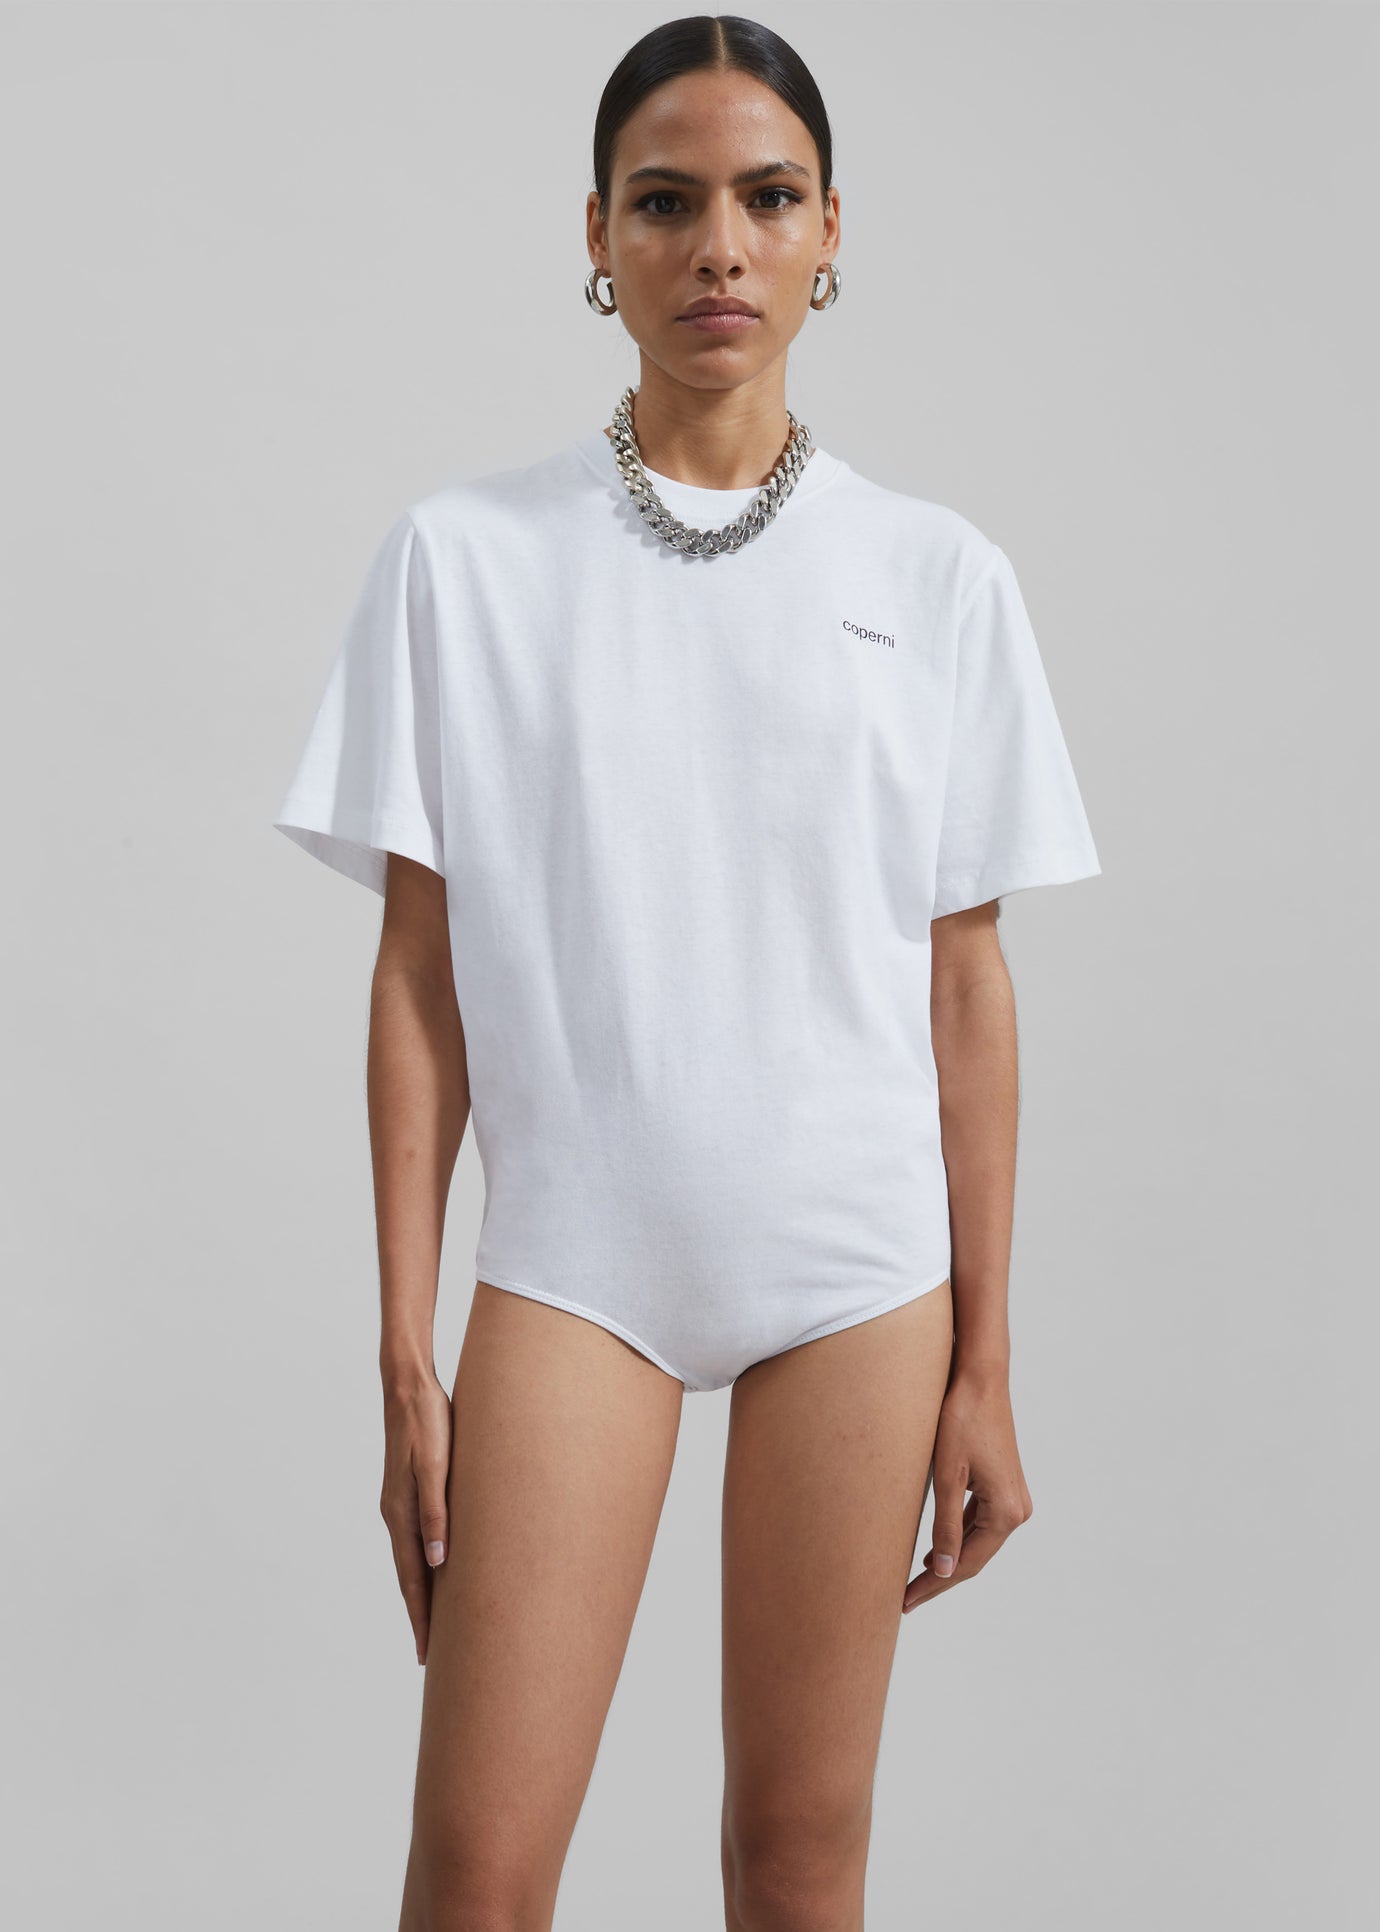 Coperni T-Shirt Bodysuit - White